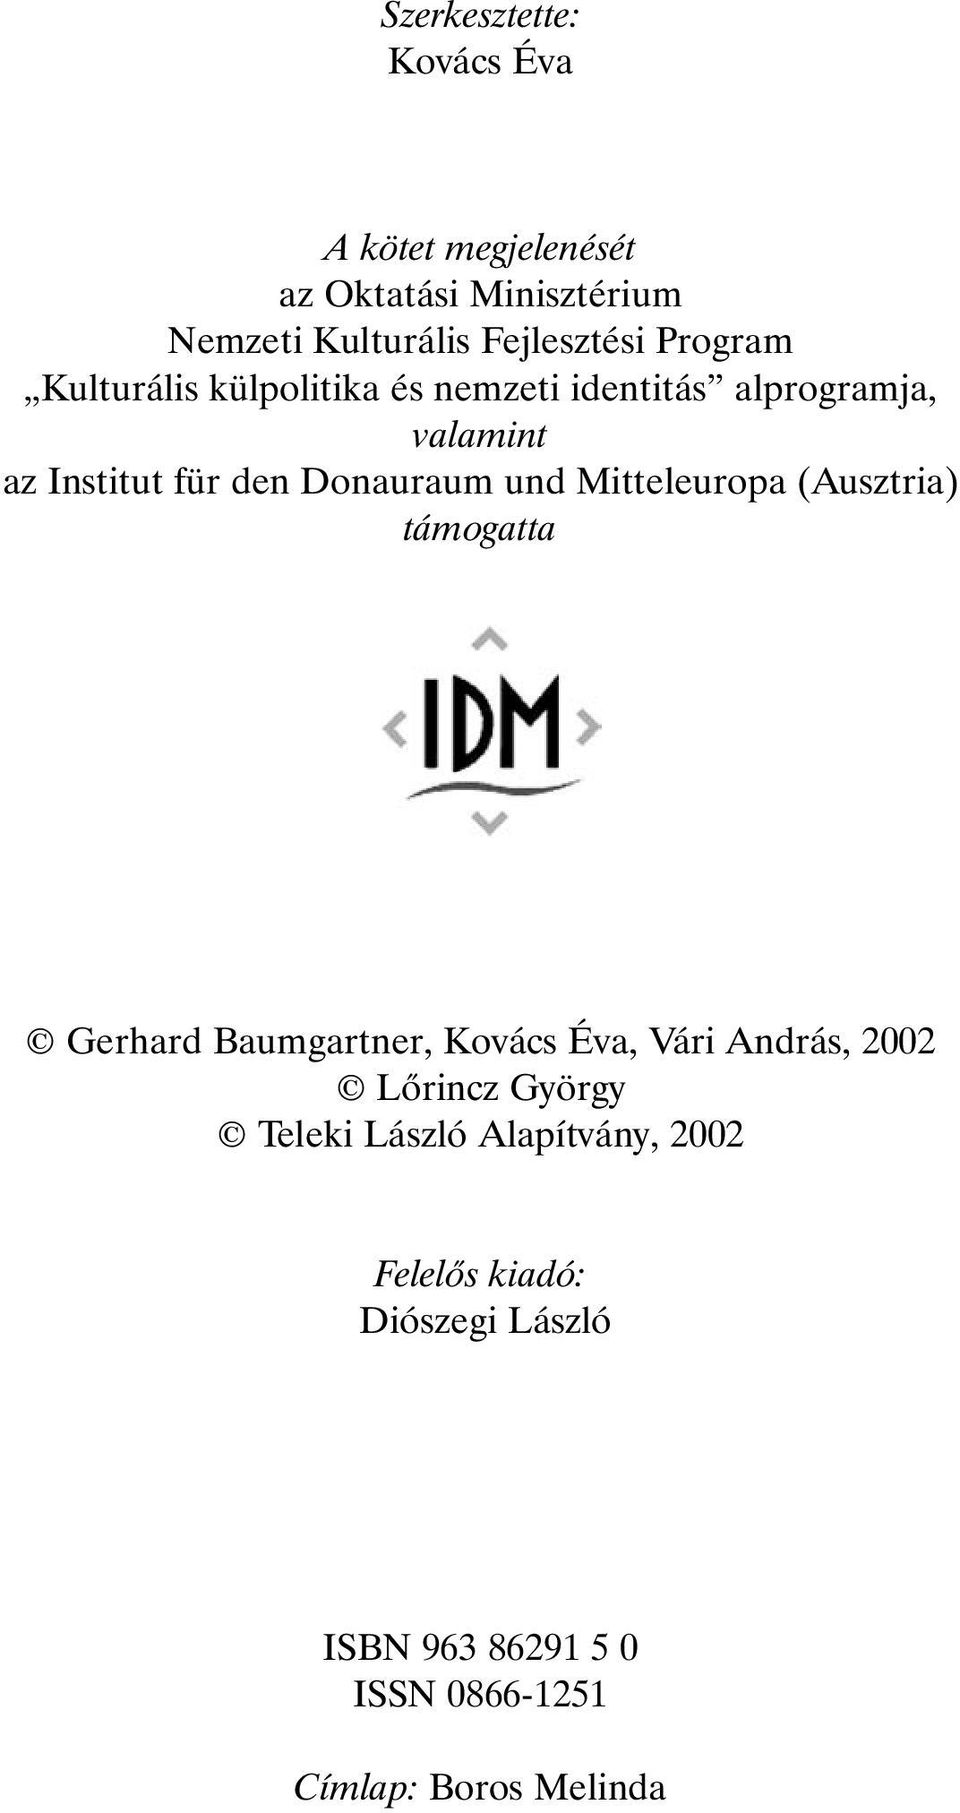 und Mitteleuropa (Ausztria) támogatta Gerhard Baumgartner, Kovács Éva, Vári András, 2002 Lõrincz György